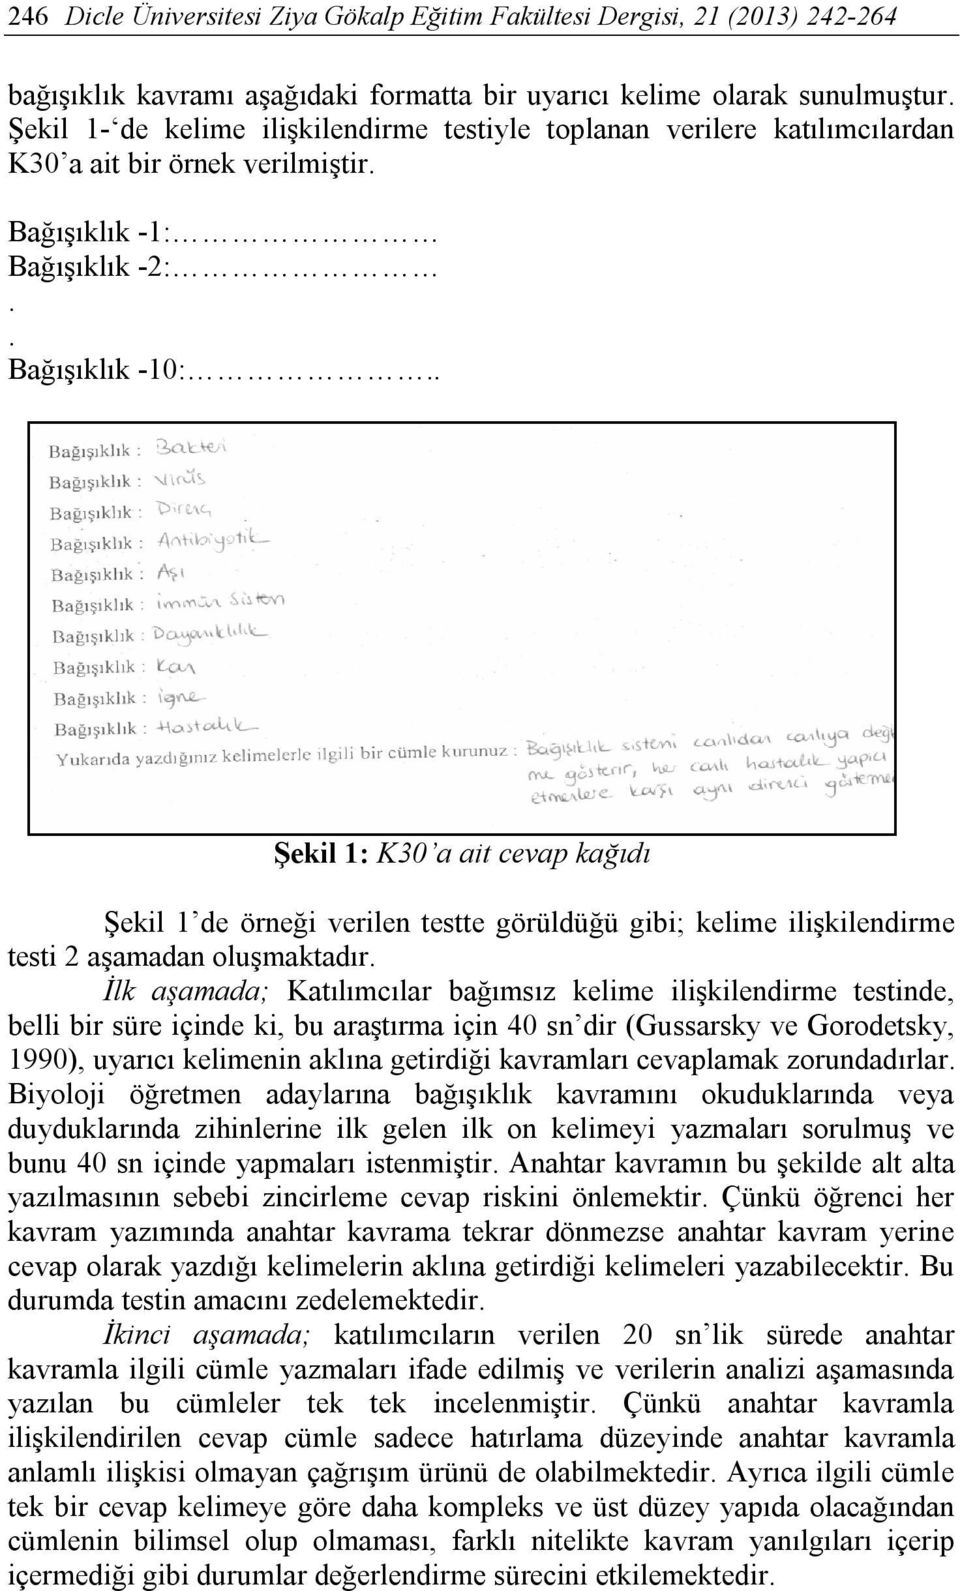 İlk aşamada; Katılımcılar bağımsız kelime ilişkilendirme testinde, belli bir süre içinde ki, bu araştırma için 40 sn dir (Gussarsky ve Gorodetsky, 1990), uyarıcı kelimenin aklına getirdiği kavramları